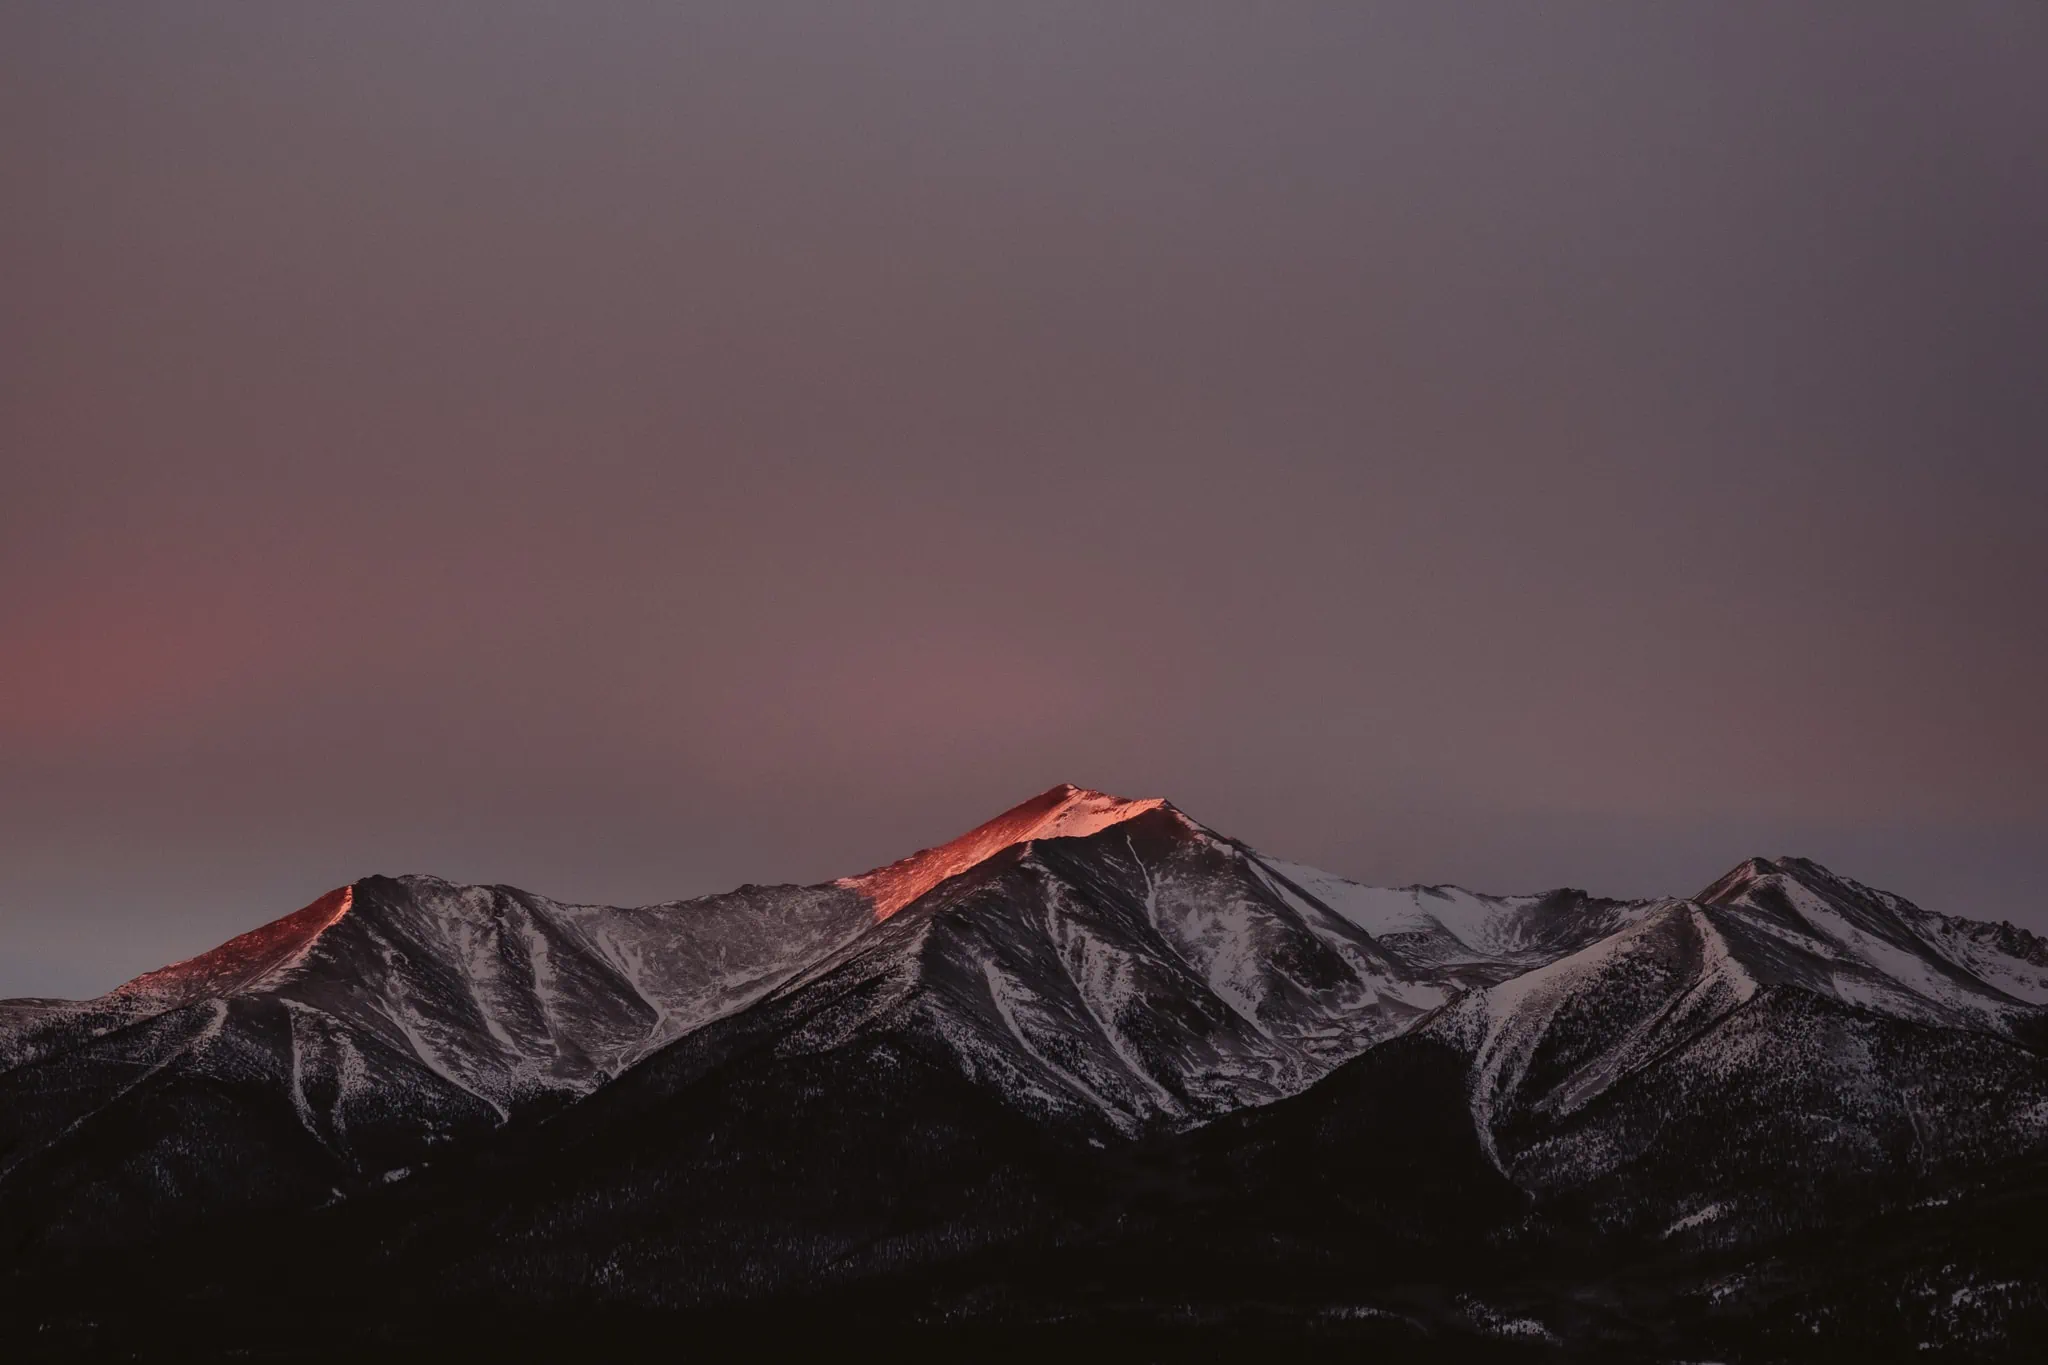 Sunrise over Collegiate Peaks from Buena Vista